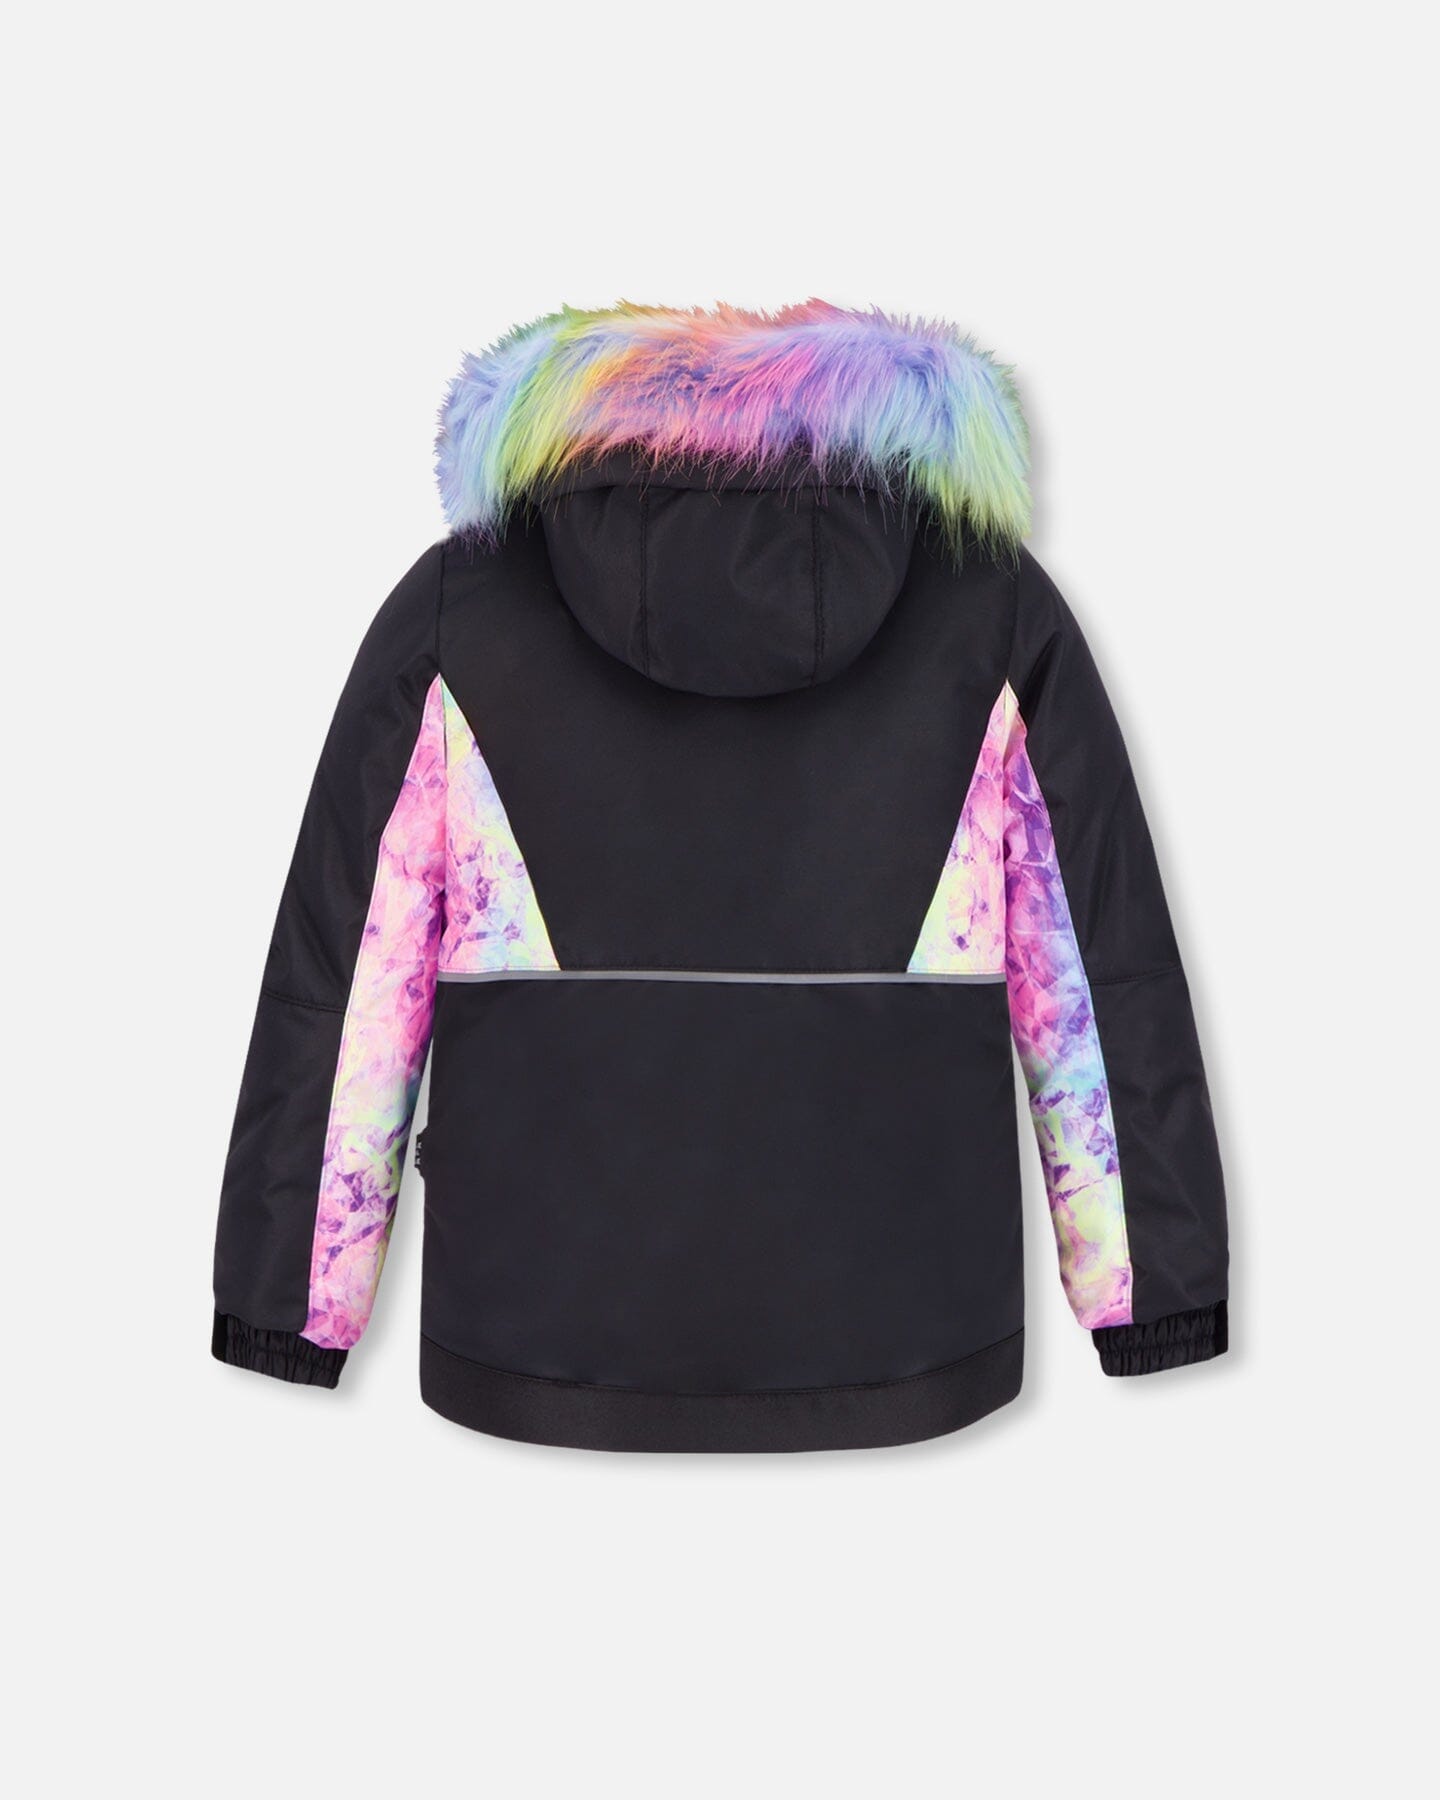 Two Piece Snowsuit Black With Frosted Rainbow Print Snowsuits Deux par Deux 